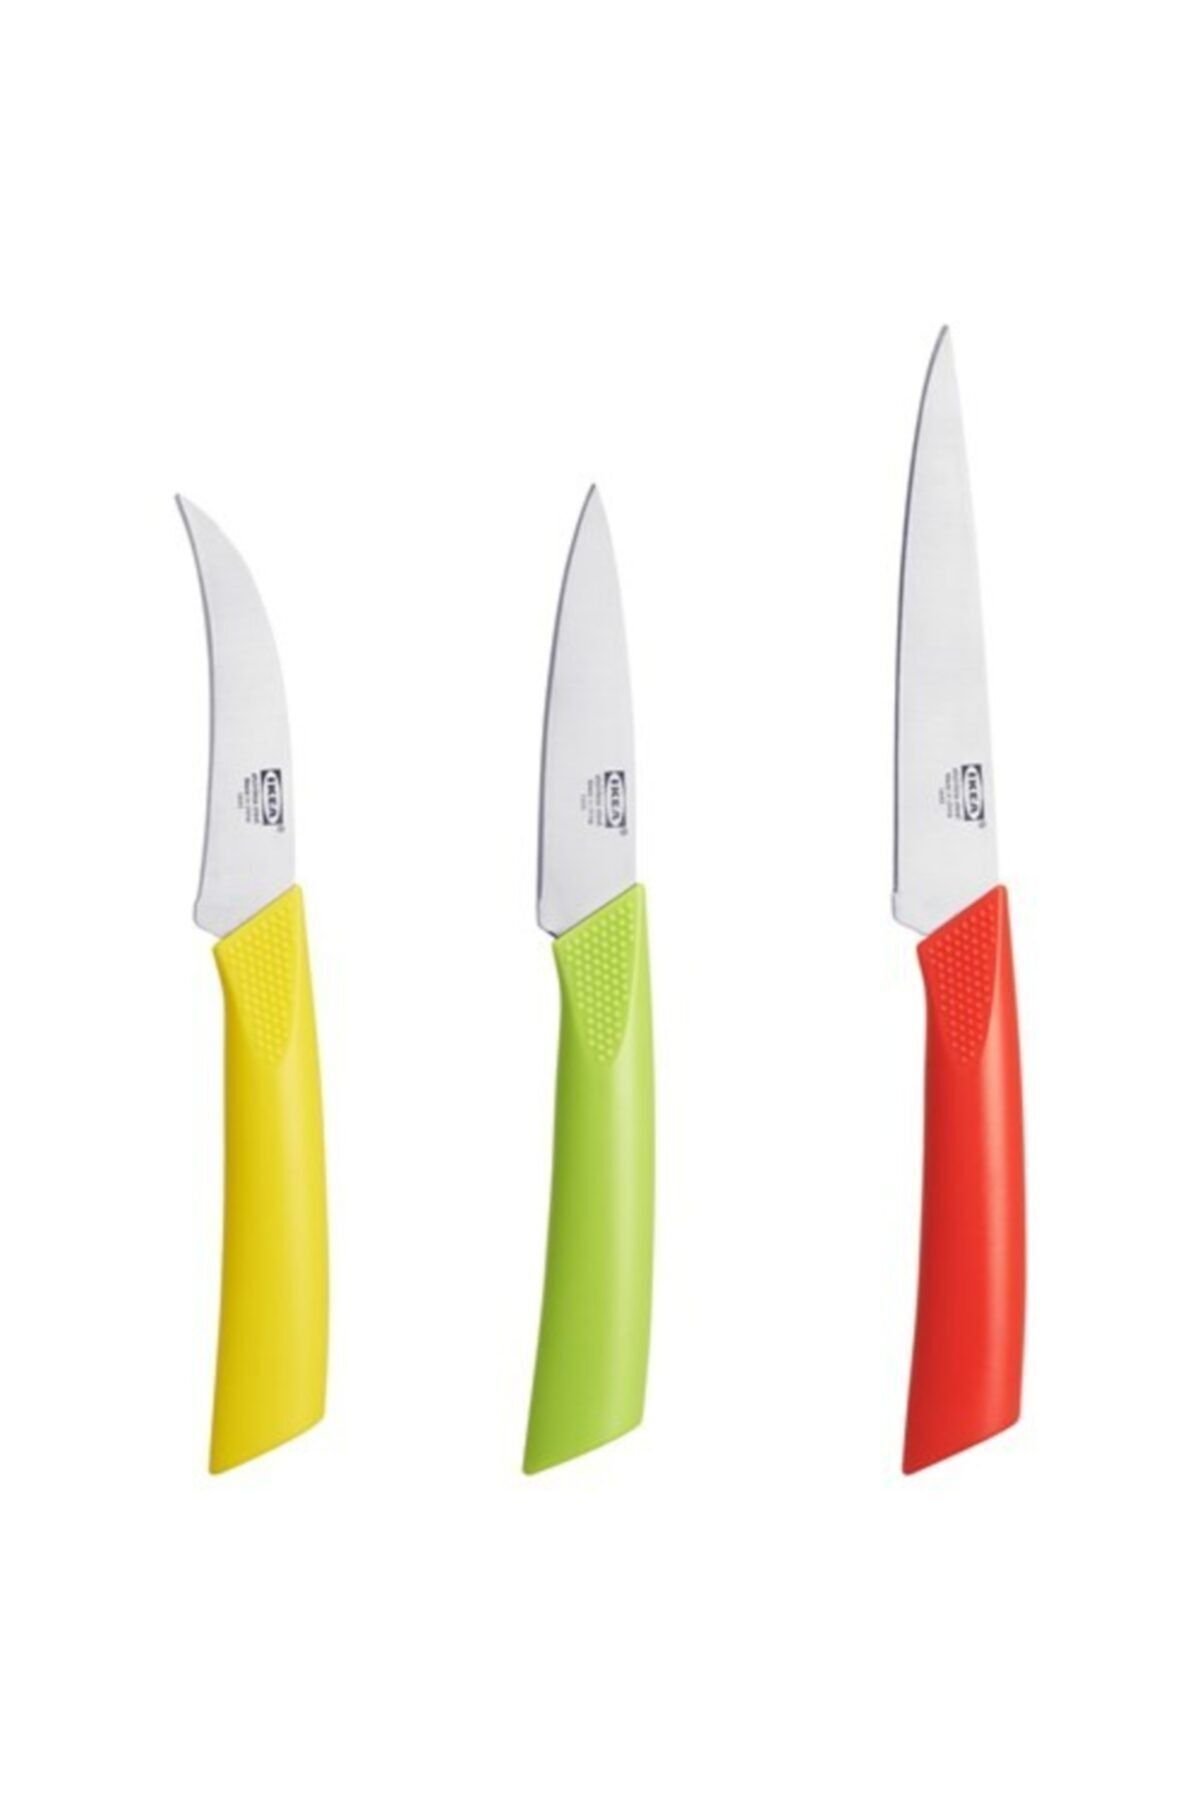 IKEA Matdoft Bıçak Seti 3'lü Mutfak Bıçakları Seti